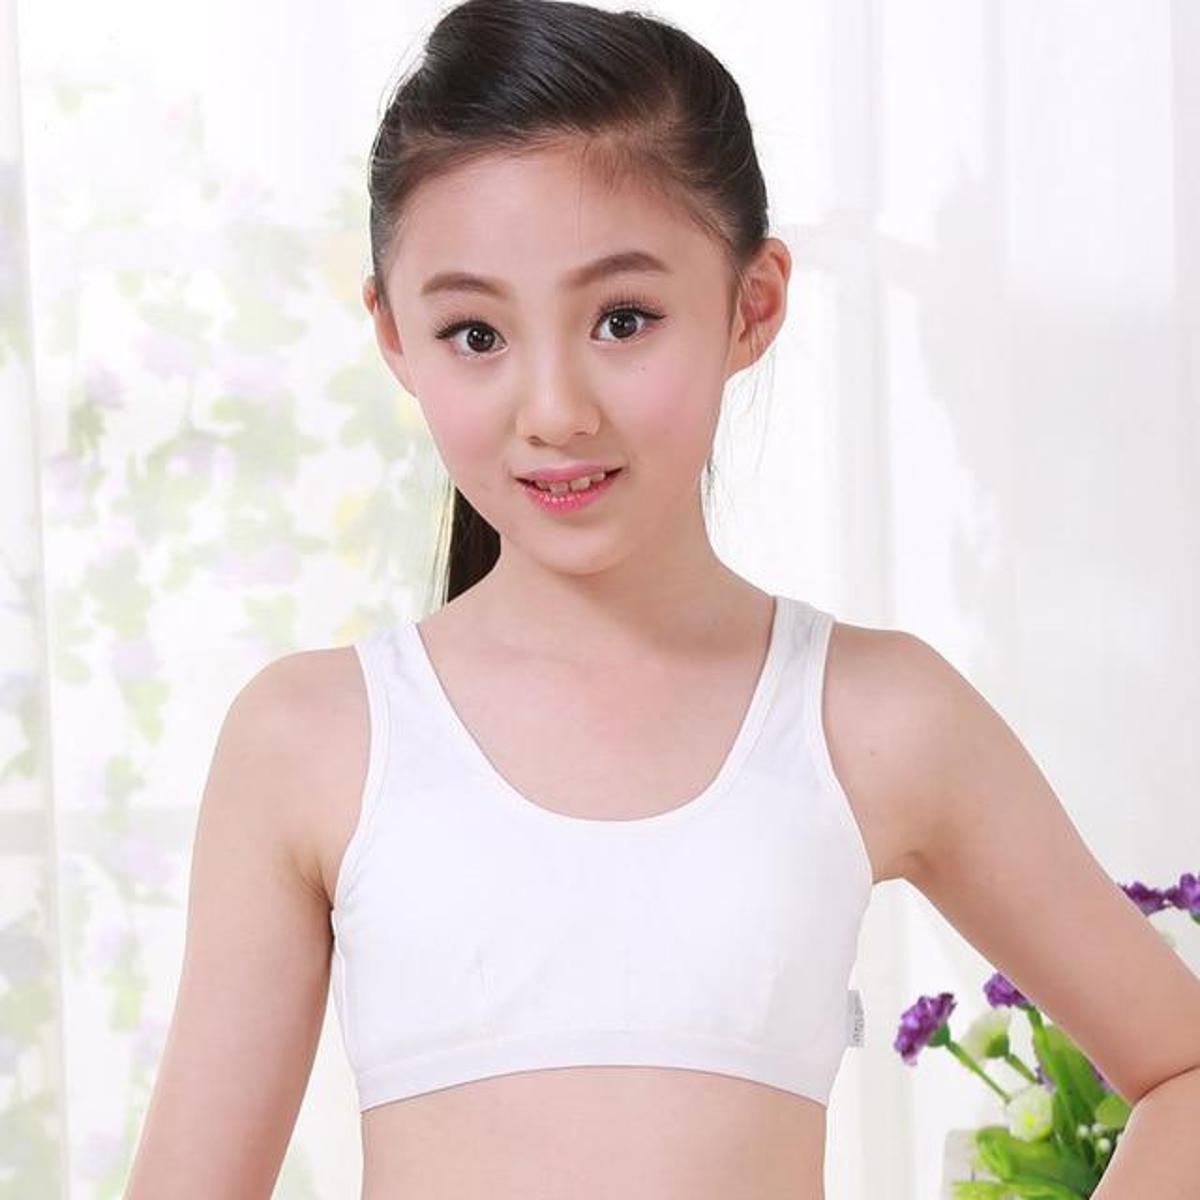 Wholesale Teenage Girls Underwear 14 Years Cotton Solid White Training Bras  for Girls Vest School Children Clothing